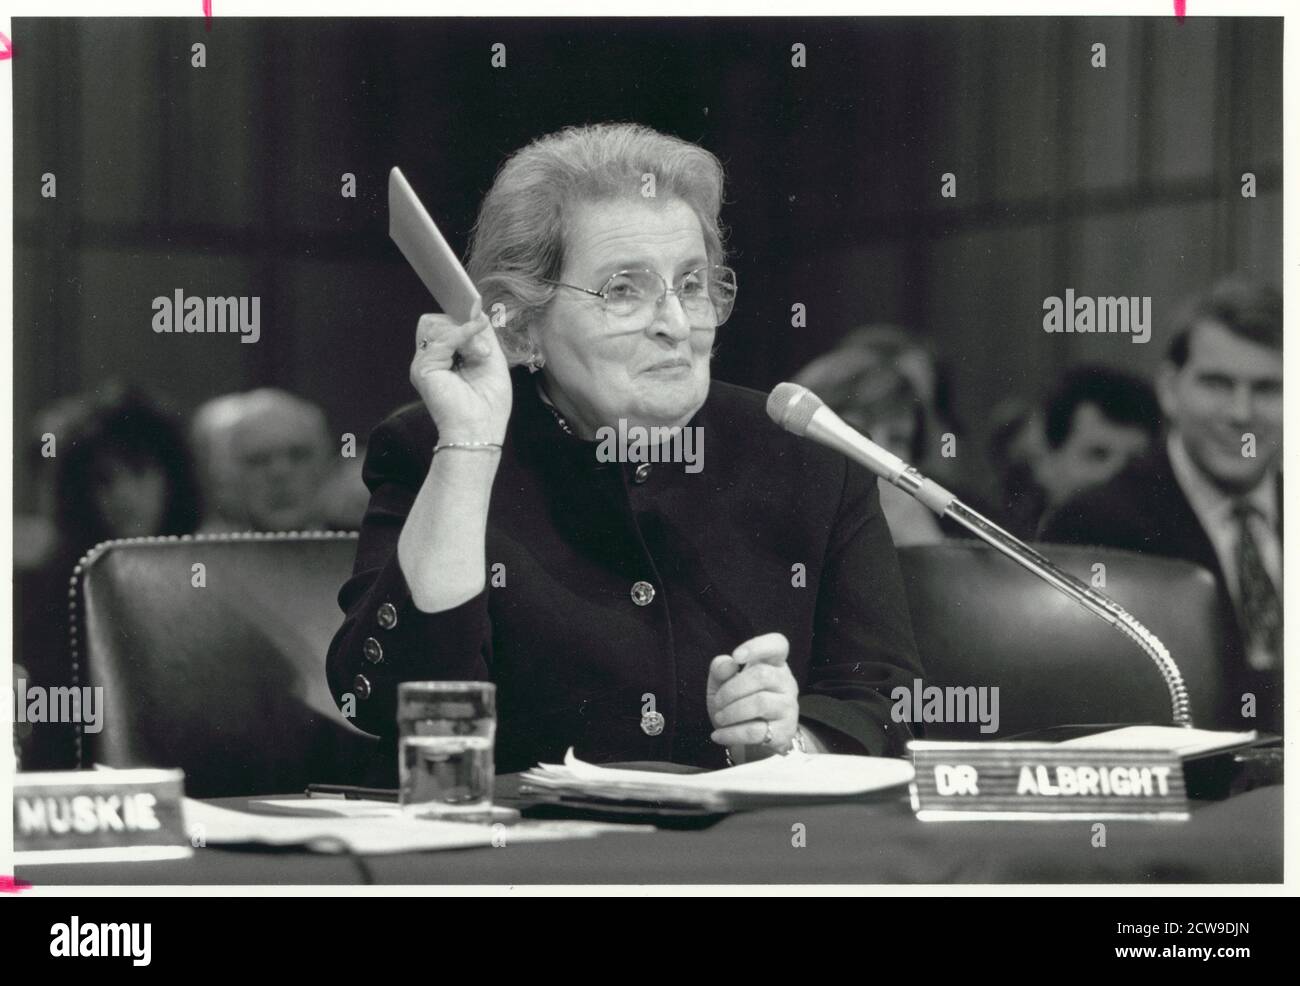 Madeleine Korbel Albright (geb. 1937) hält eine Kopie der Charta der Vereinten Nationen während ihrer Bestätigungsverhandlung vor dem Ausschuss für Auswärtige Beziehungen des Senats der Vereinigten Staaten, um US-Botschafterin bei den Vereinten Nationen, Washington, DC, 1/23/1993 zu werden. (Foto von Michael R Jenkins/CQ Roll Call Photography Collection/RBM Vintage Images) Stockfoto